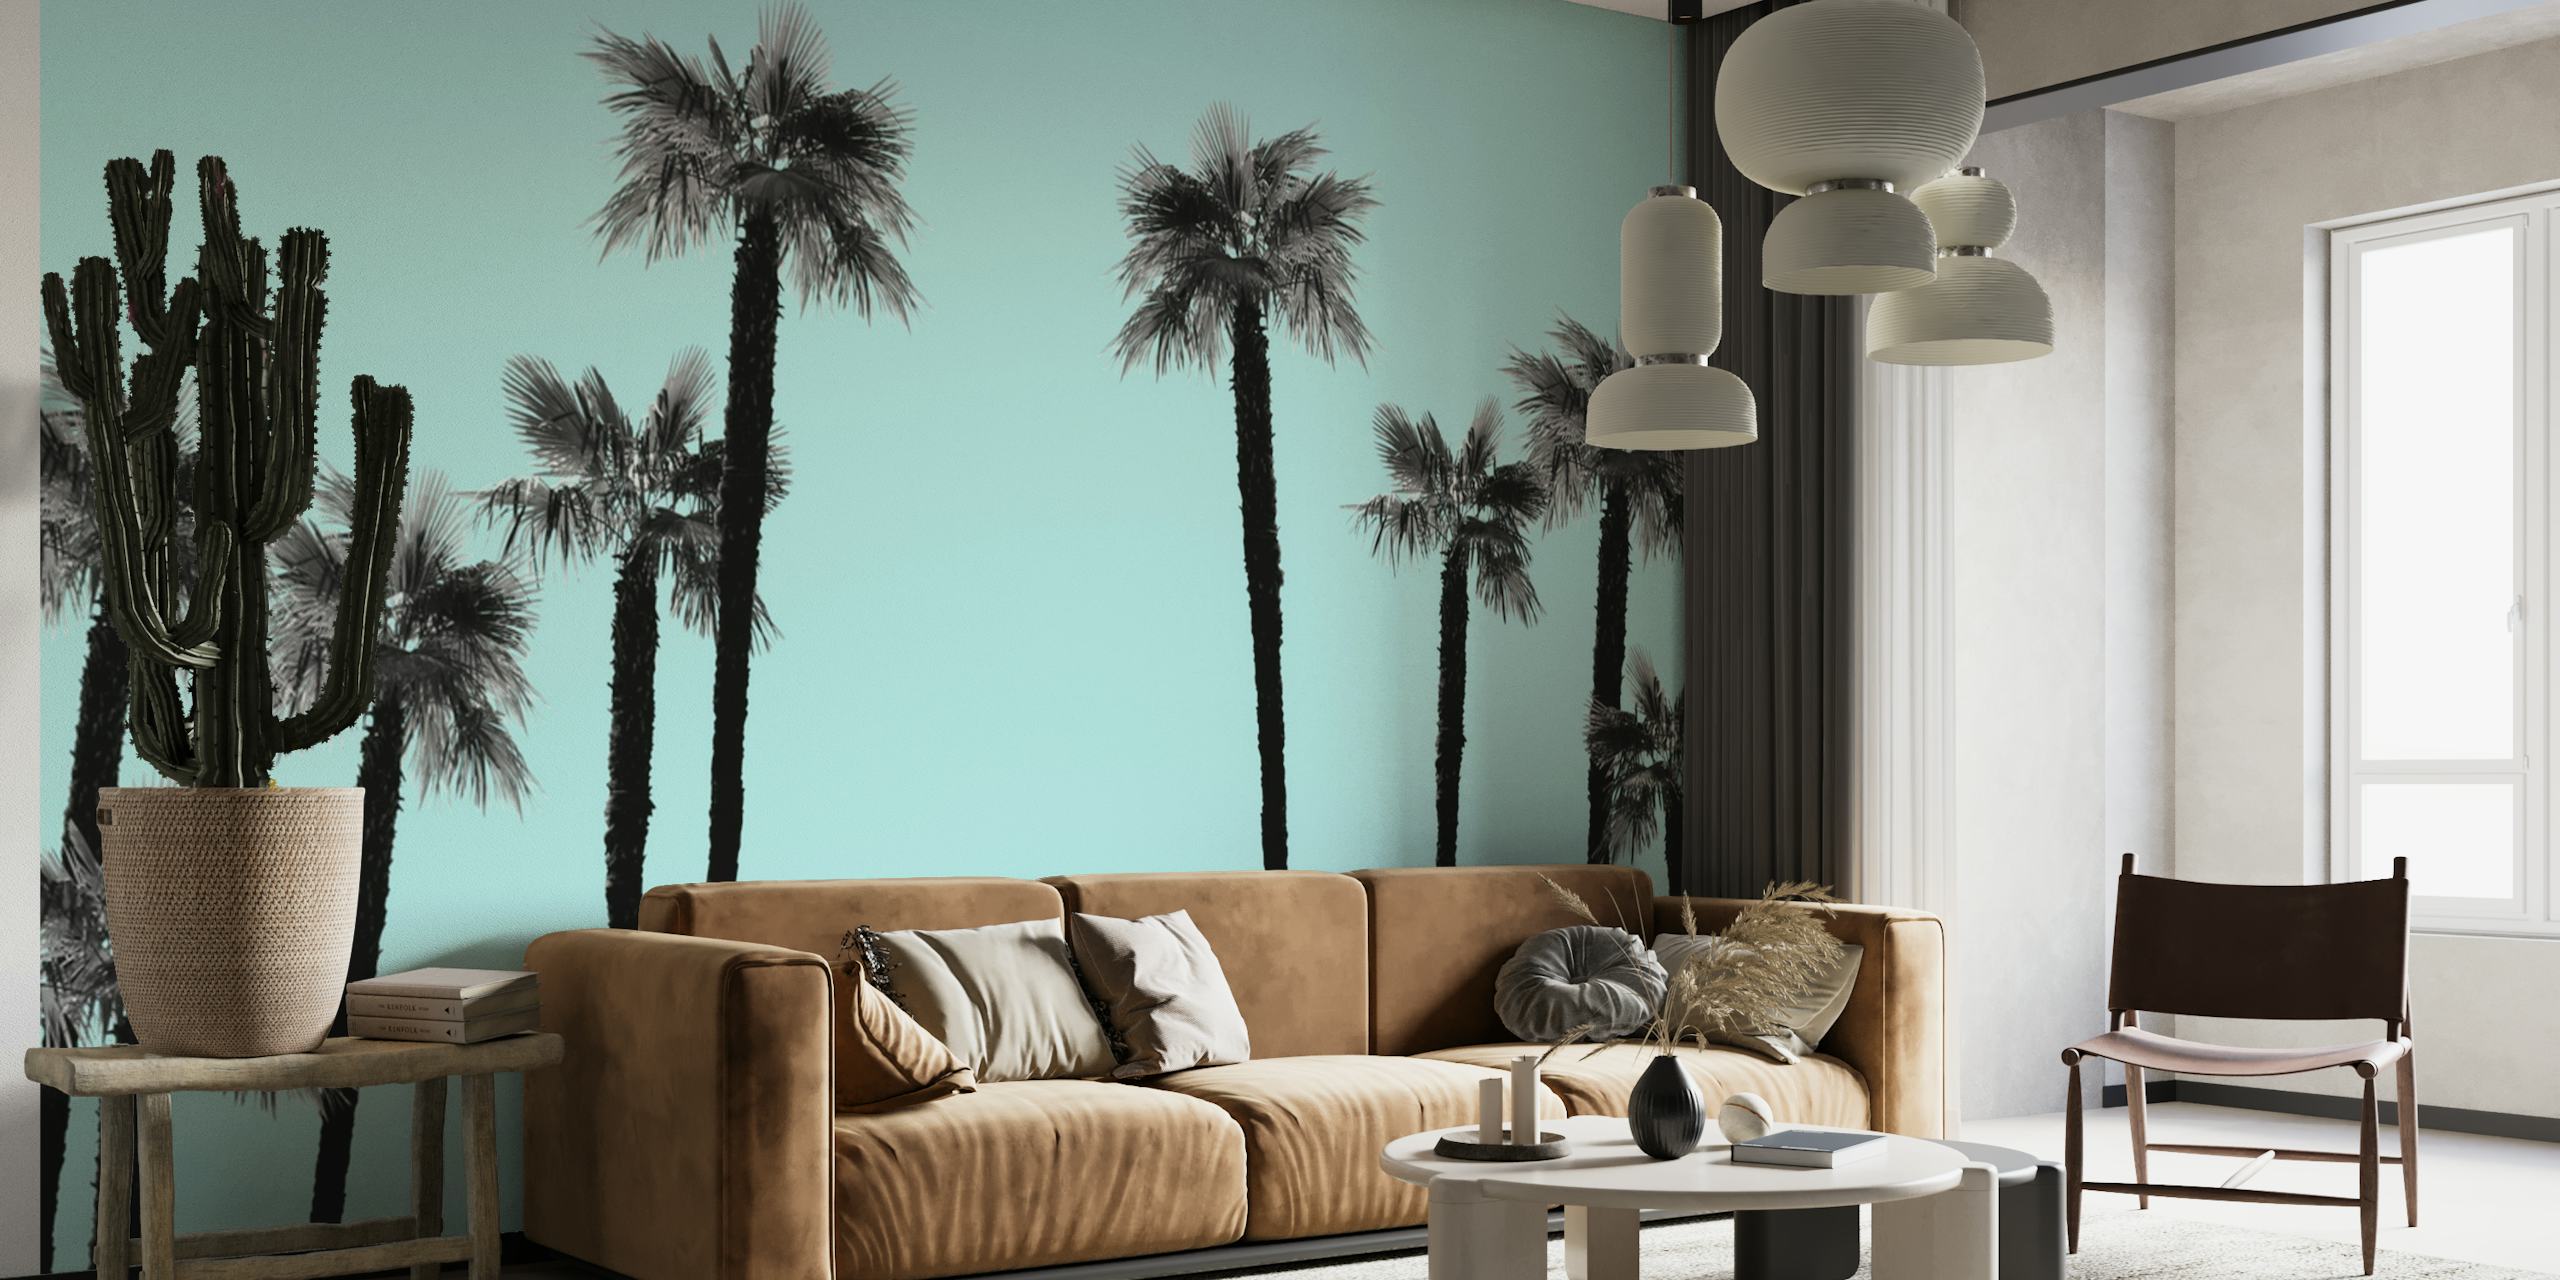 Czarno-białe sylwetki palm na fototapecie w pastelowym niebieskim tle